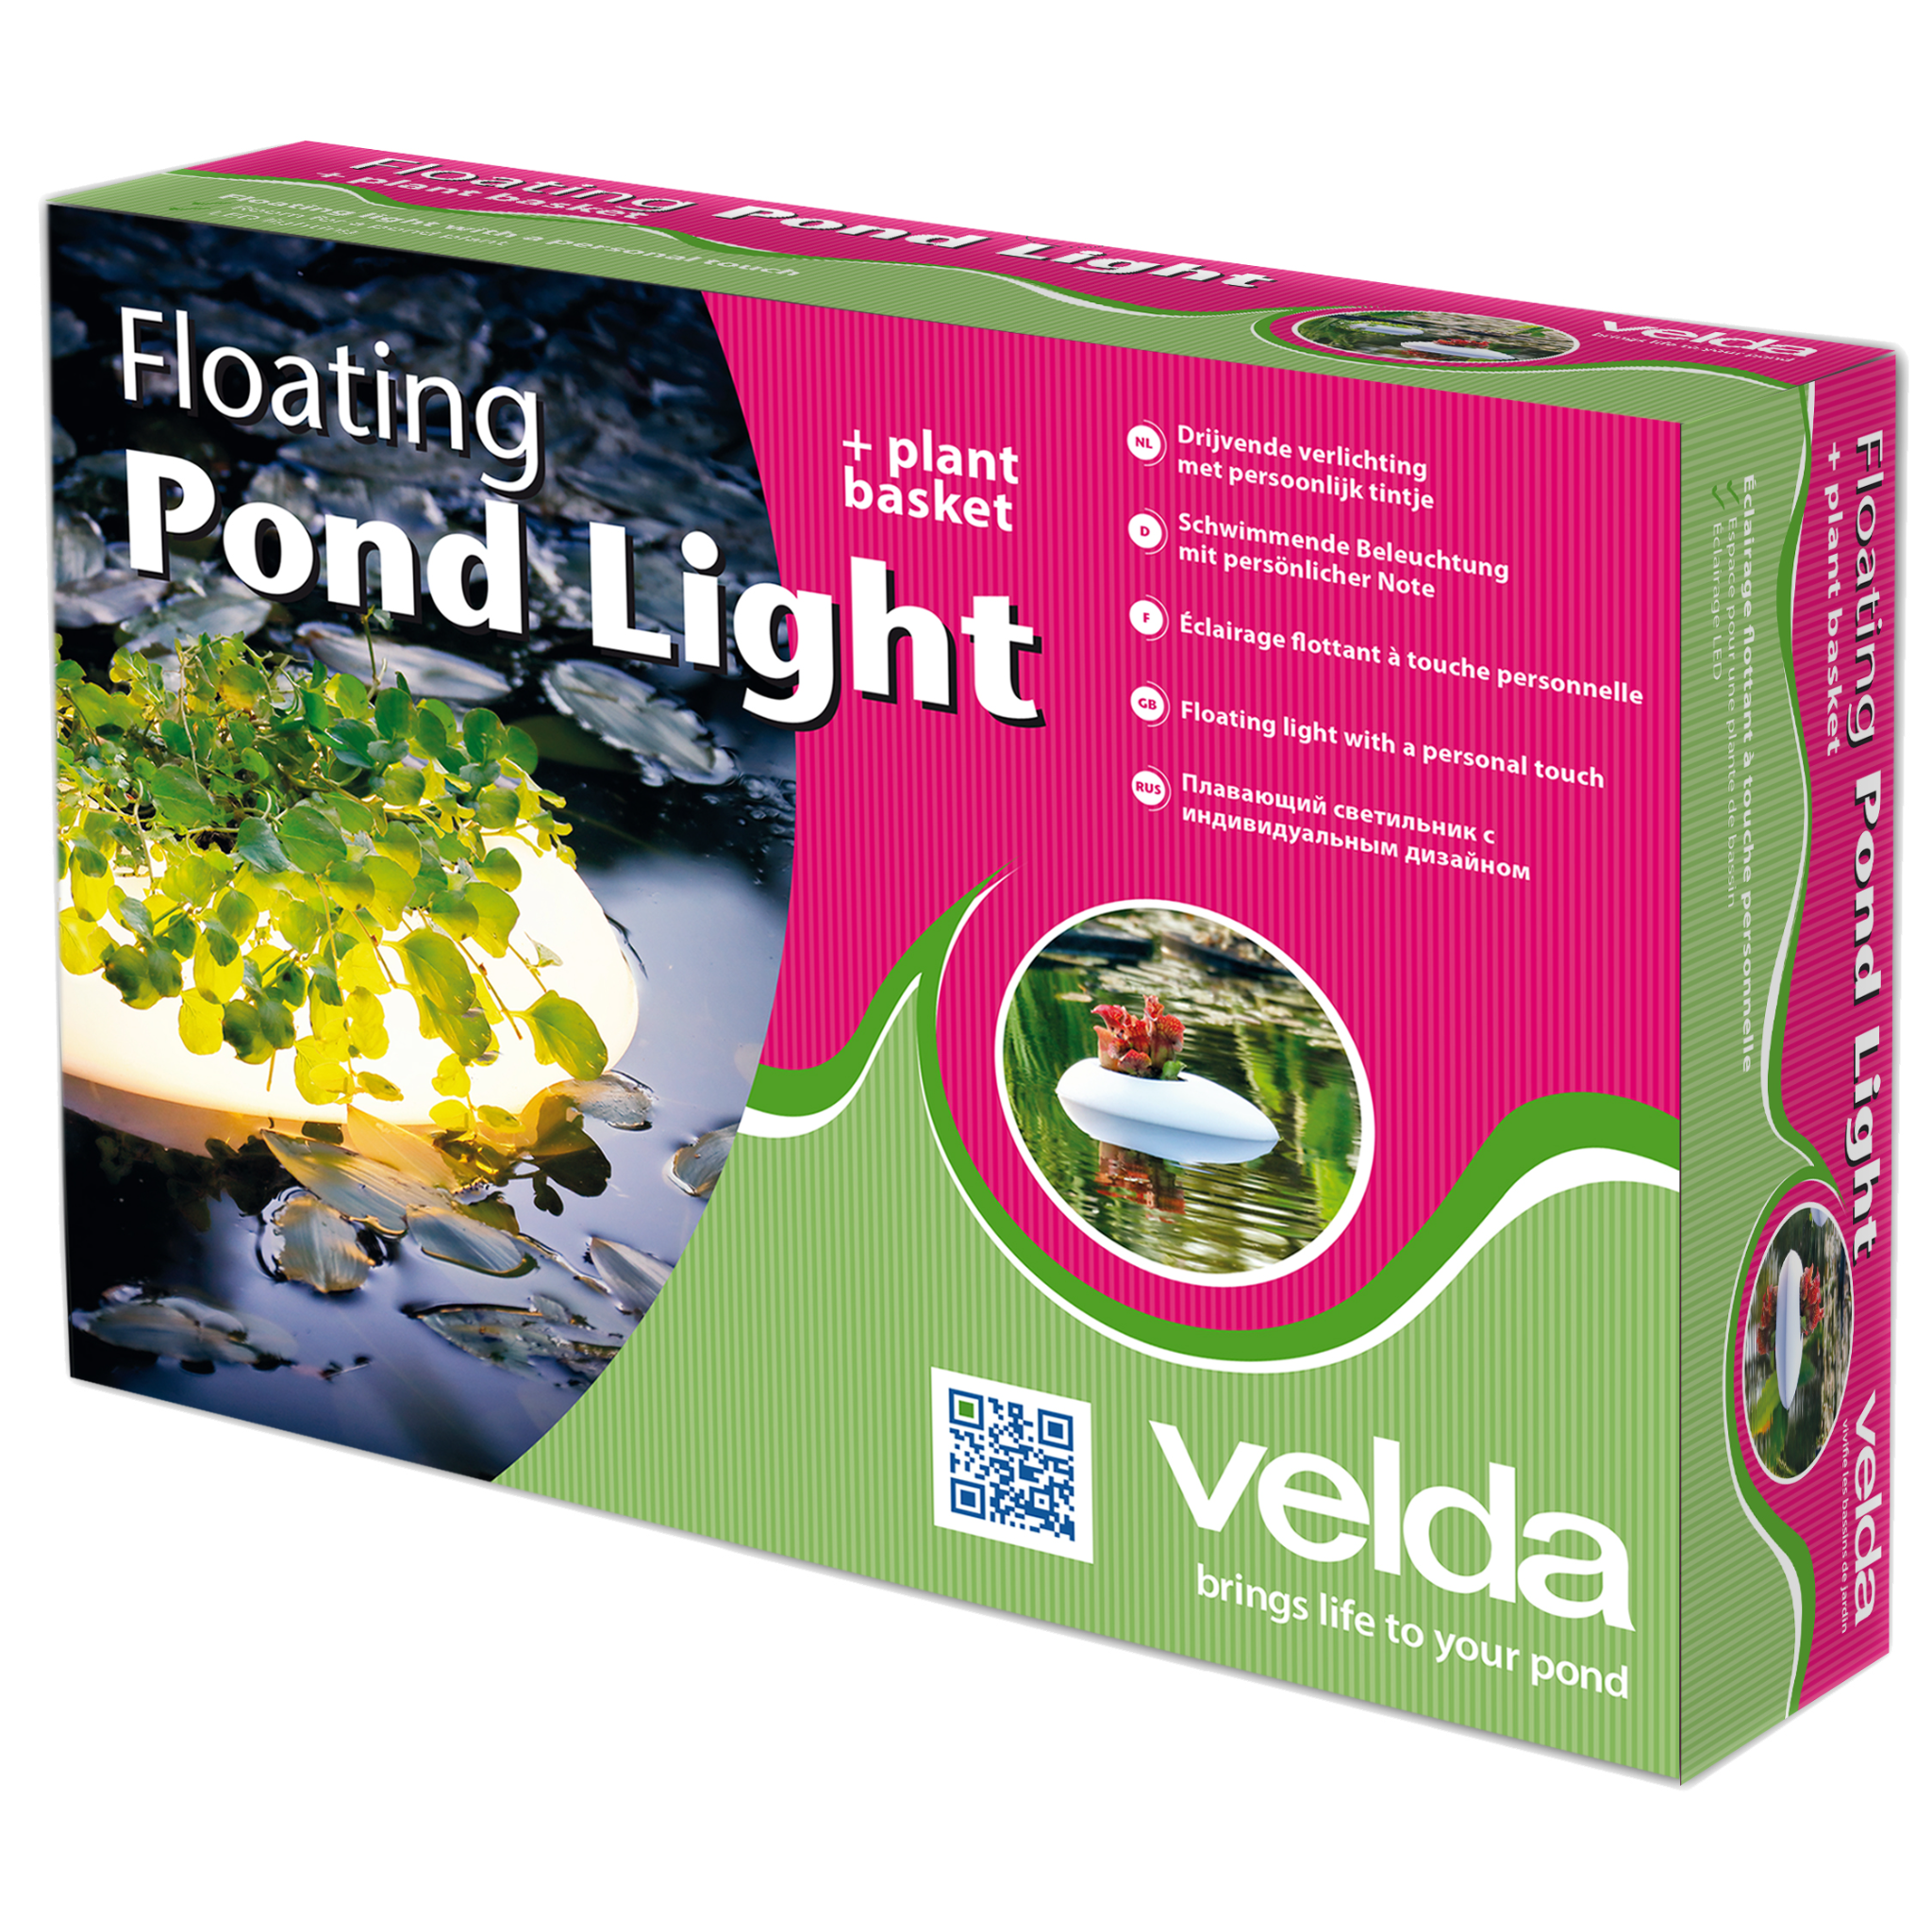 Floating Pond Light